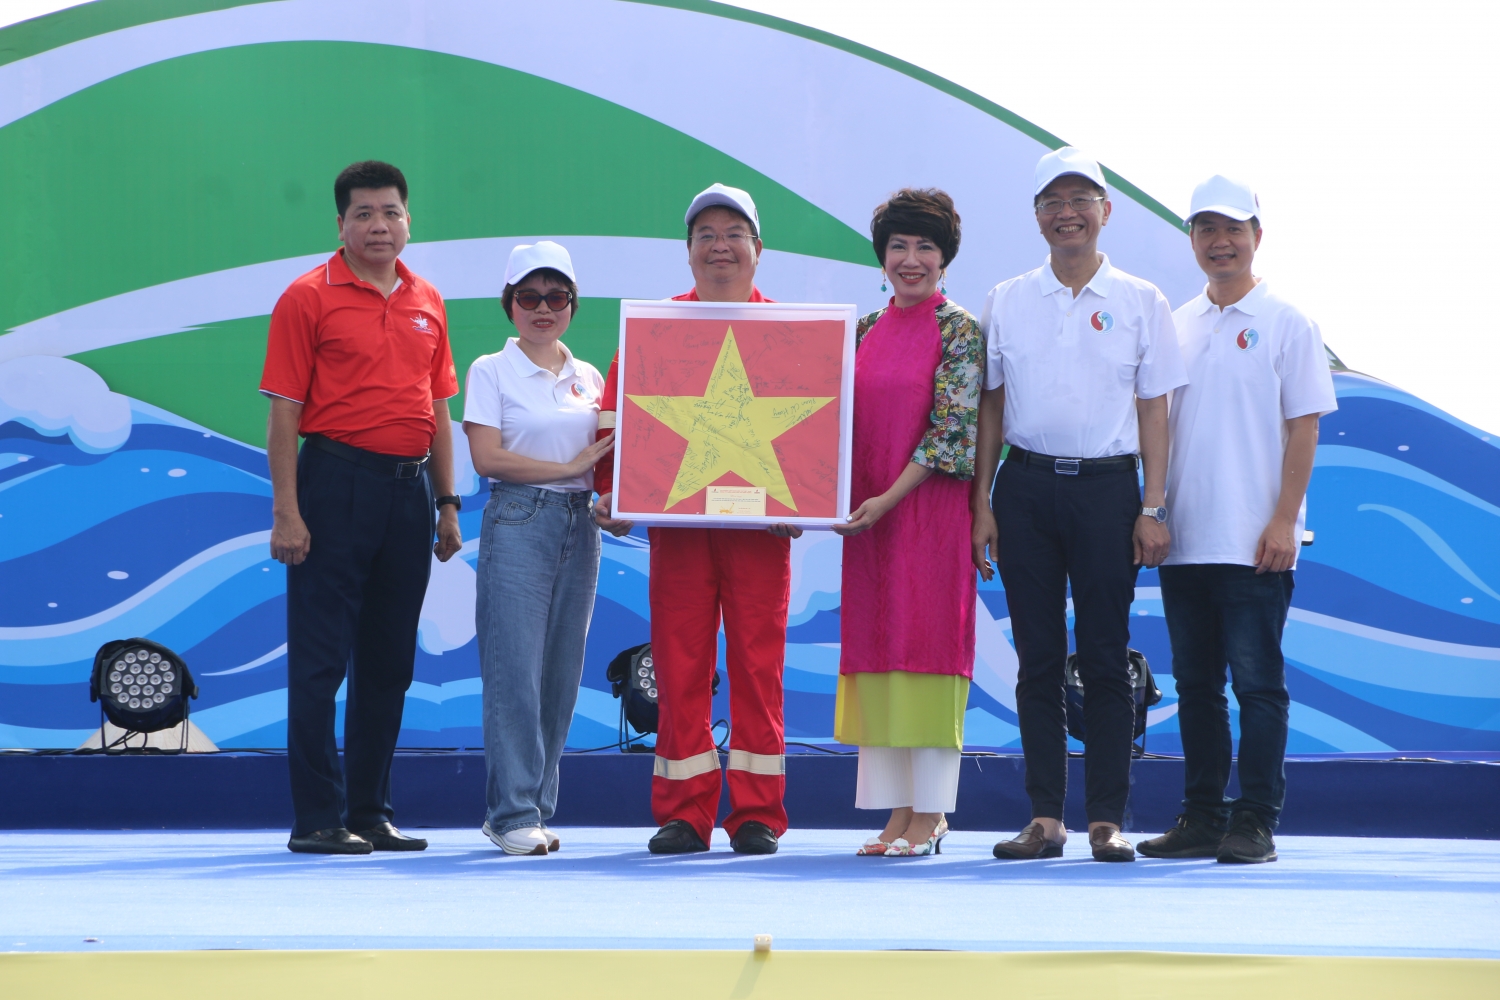 Petrovietnam hưởng ứng Lễ phát động quốc gia Tuần lễ Biển và Hải đảo Việt Nam